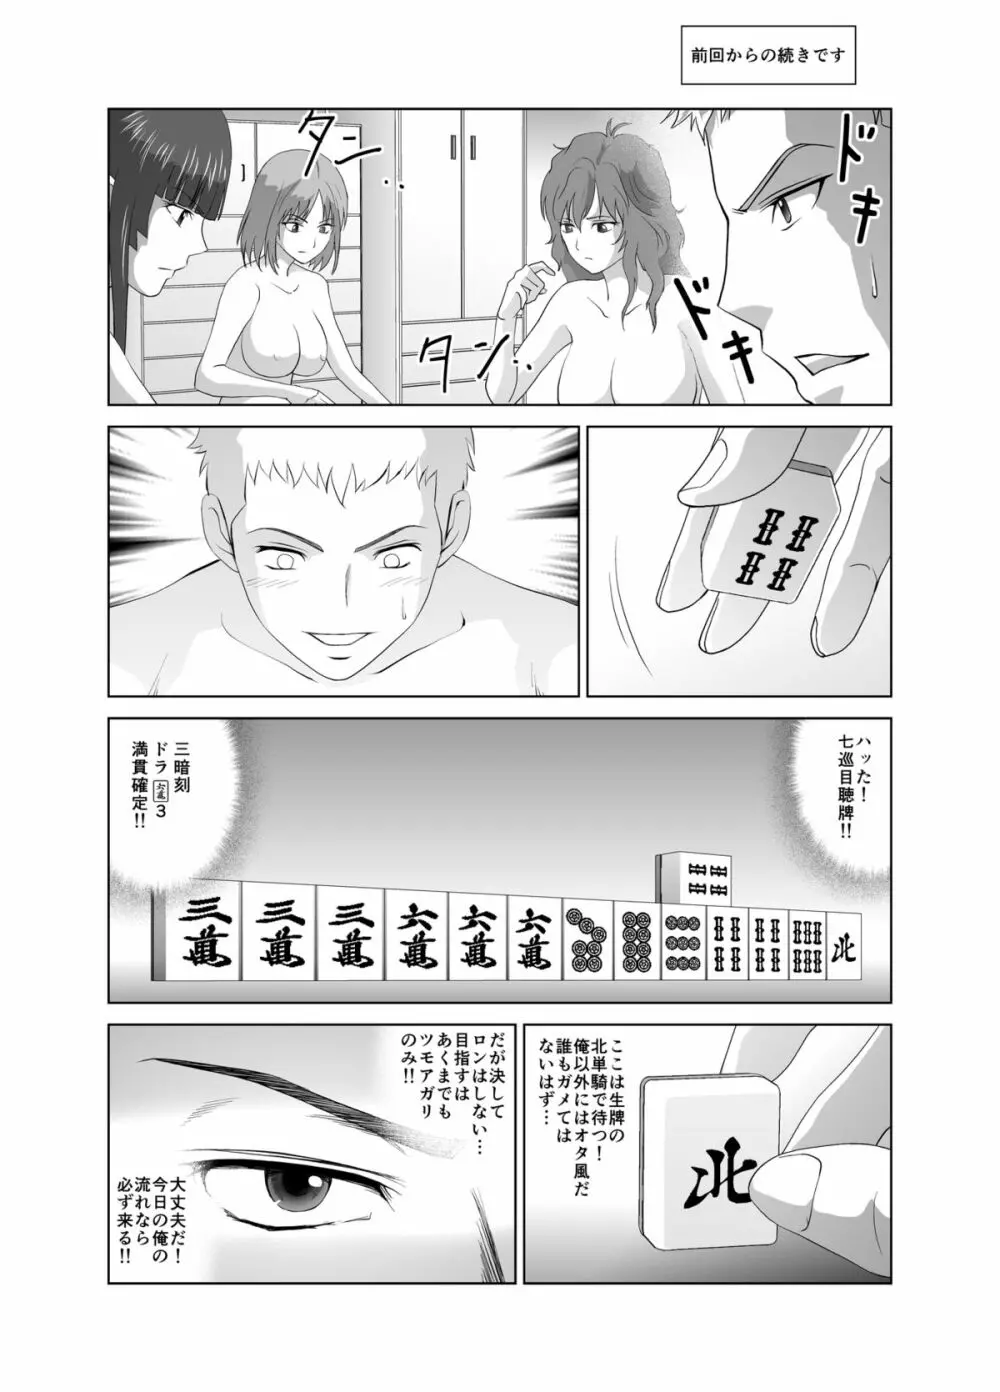 脱衣麻雀～漫画編～【完成版】 23ページ